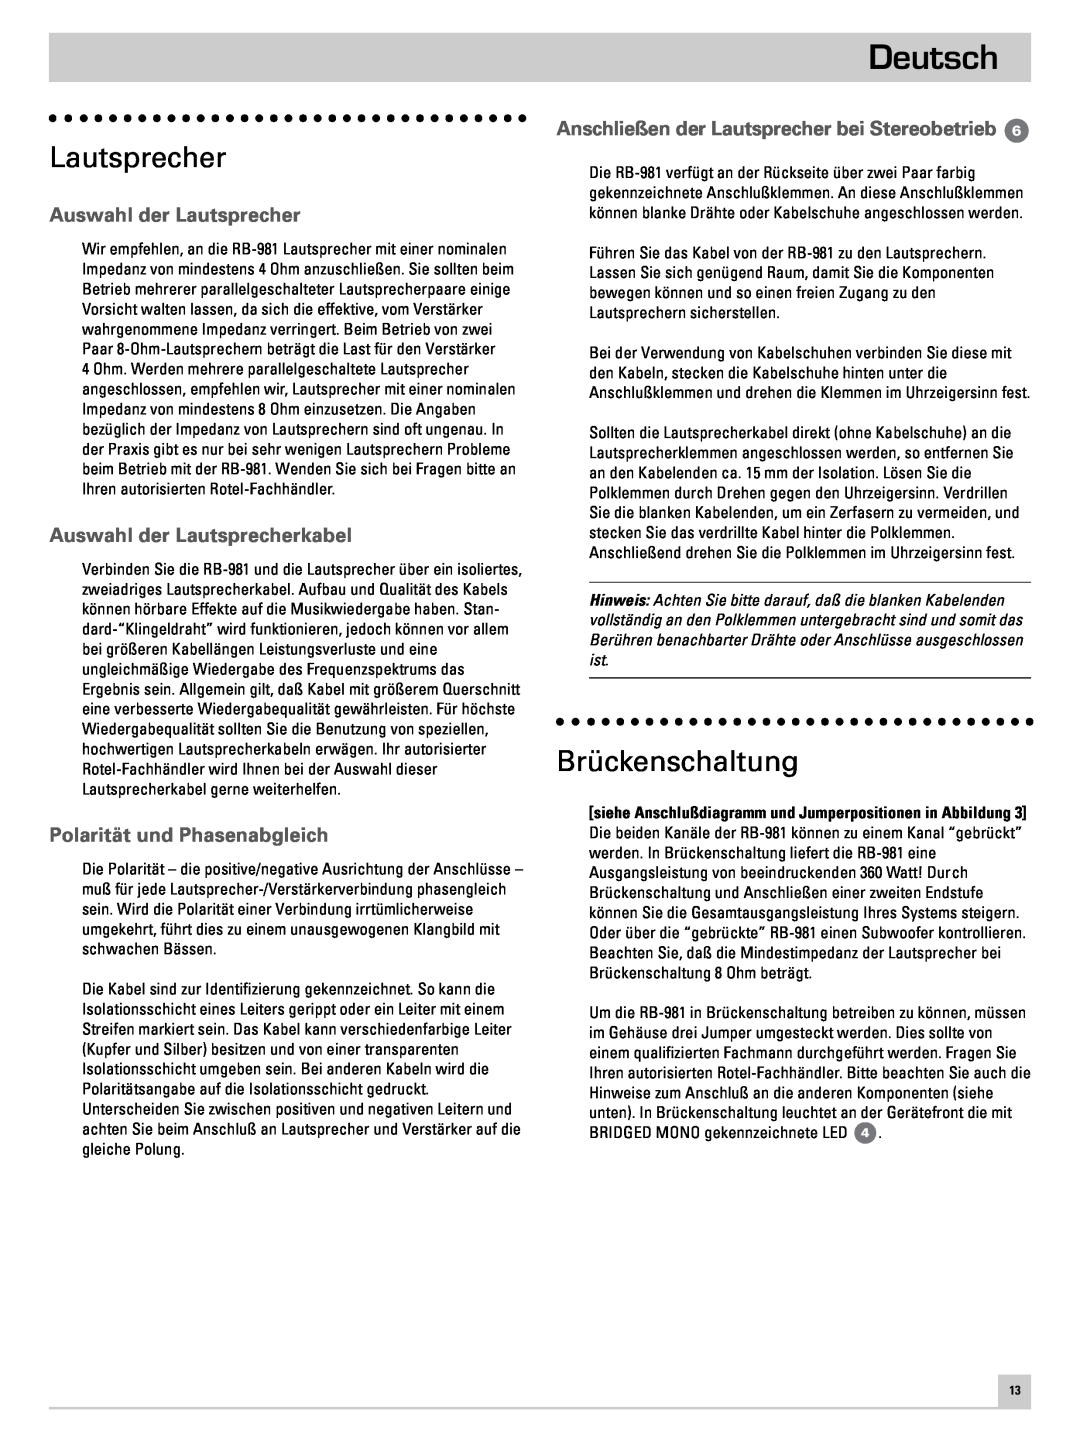 Rotel RB-981 owner manual Brückenschaltung, Auswahl der Lautsprecherkabel, Polarität und Phasenabgleich, Deutsch 